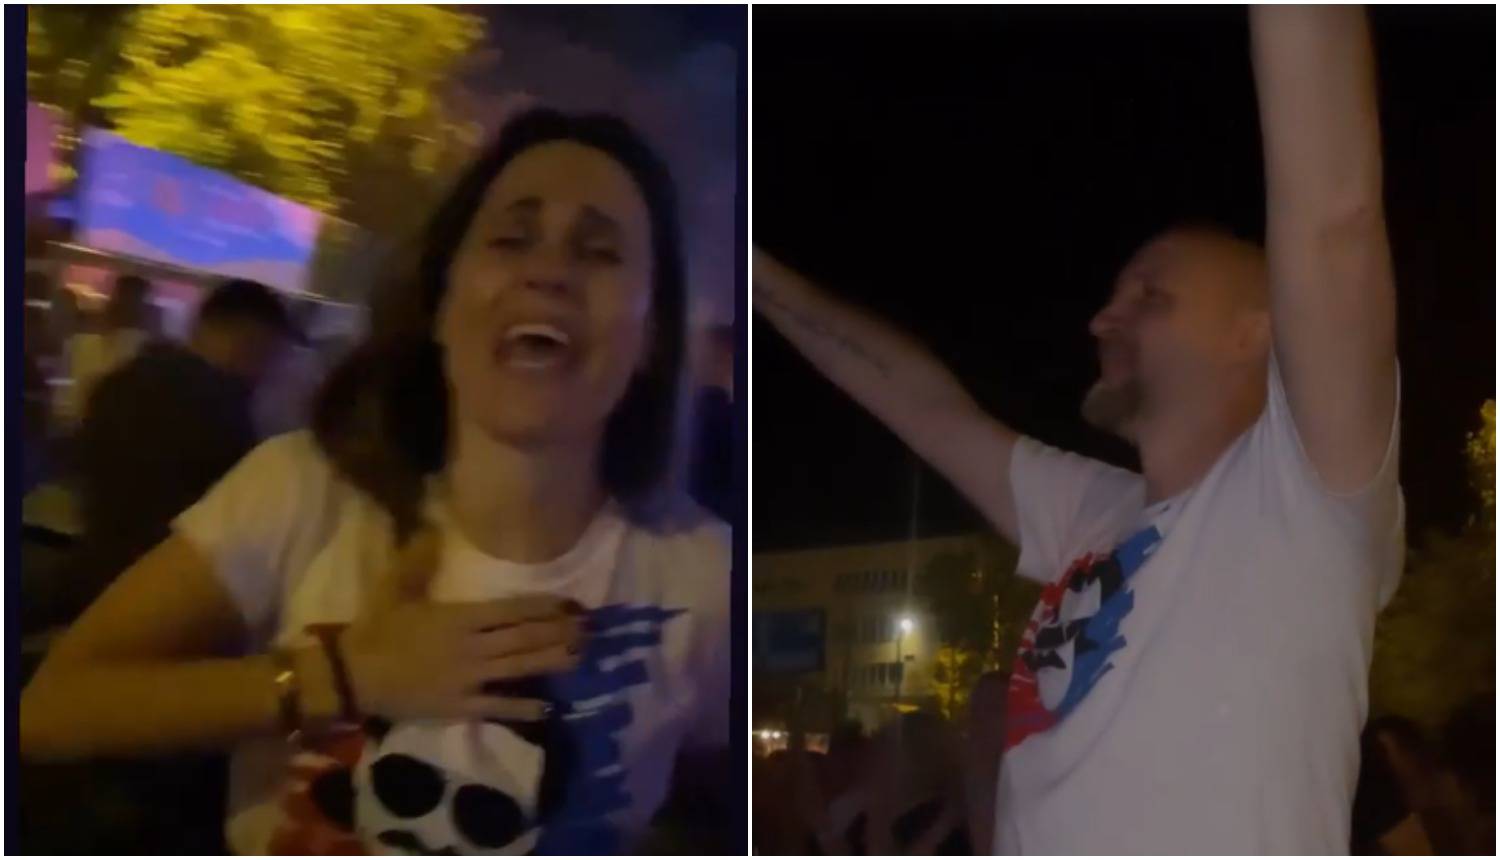 Supružnici Rađa kao najveći obožavatelji na koncert stigli u majicama s likom Miše Kovača